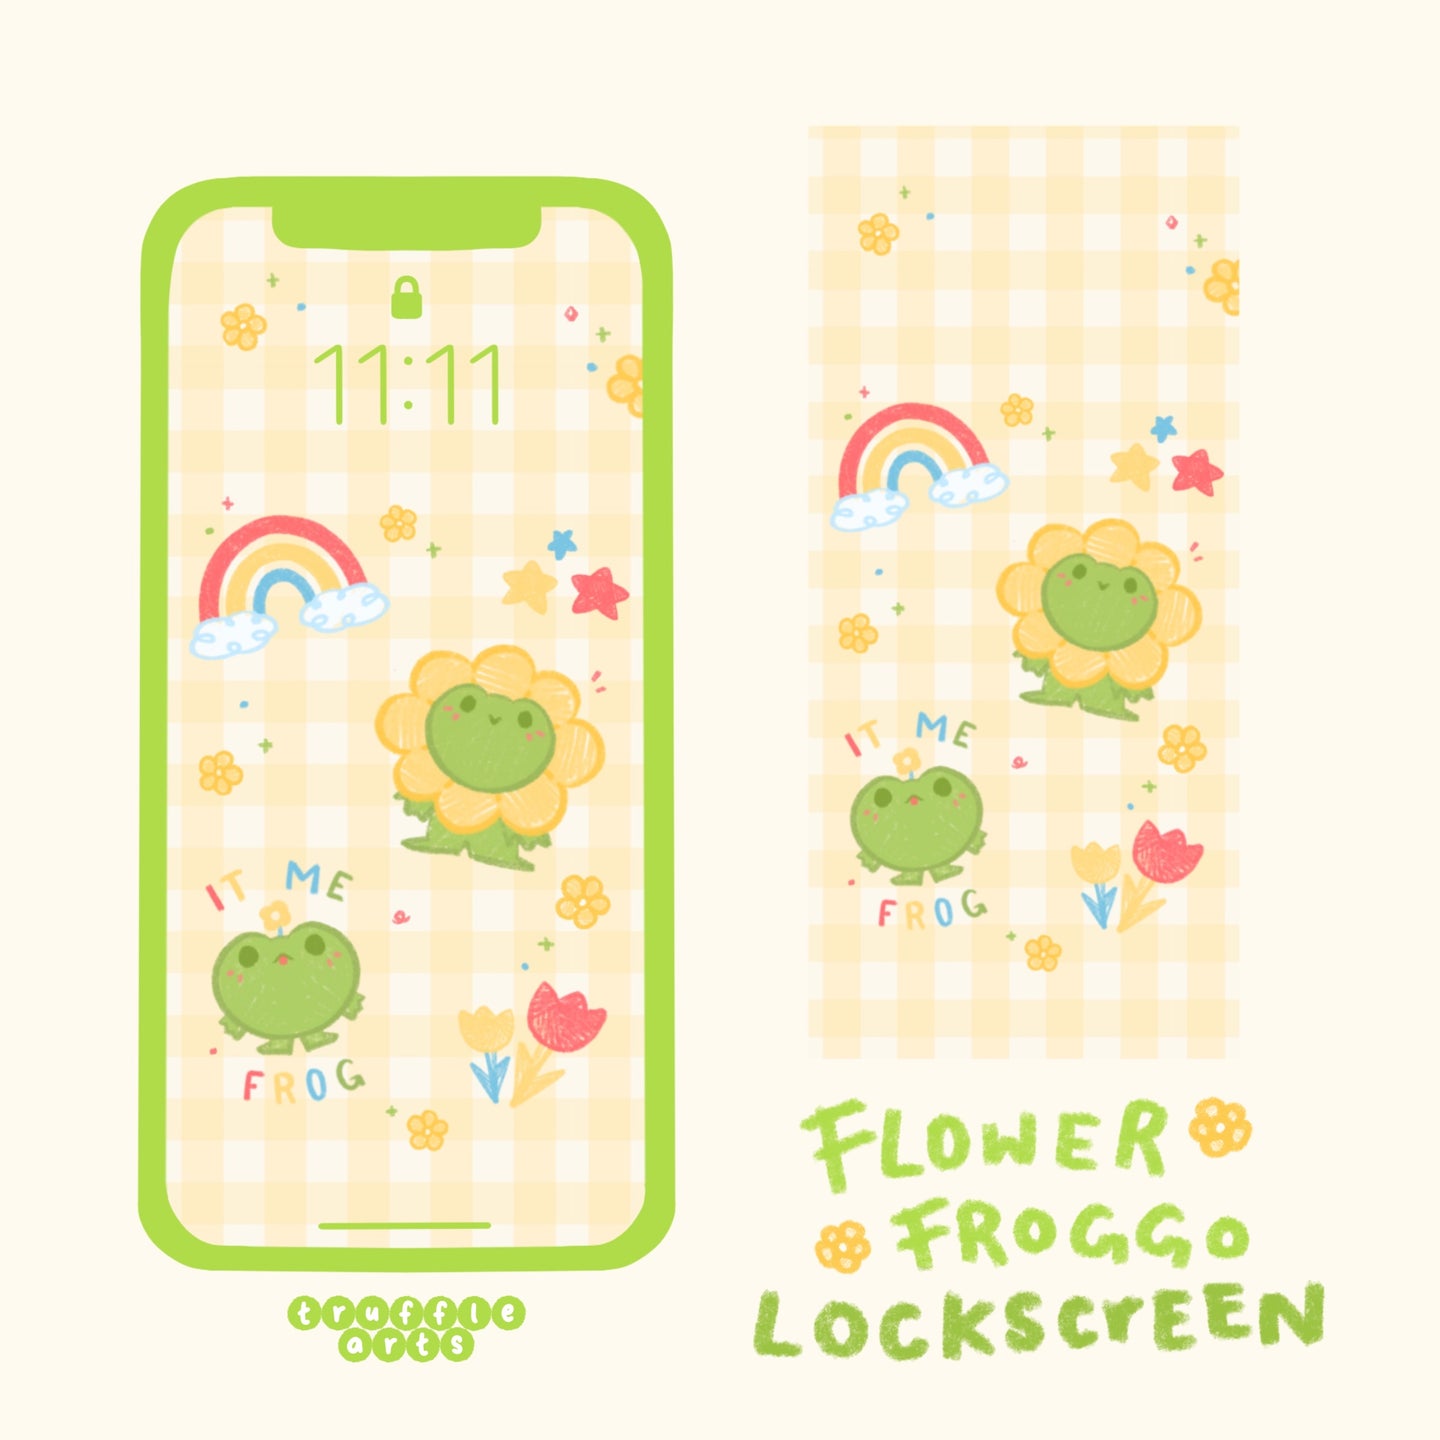 Flower Froggo iPhone Lockscreen Wallpaper